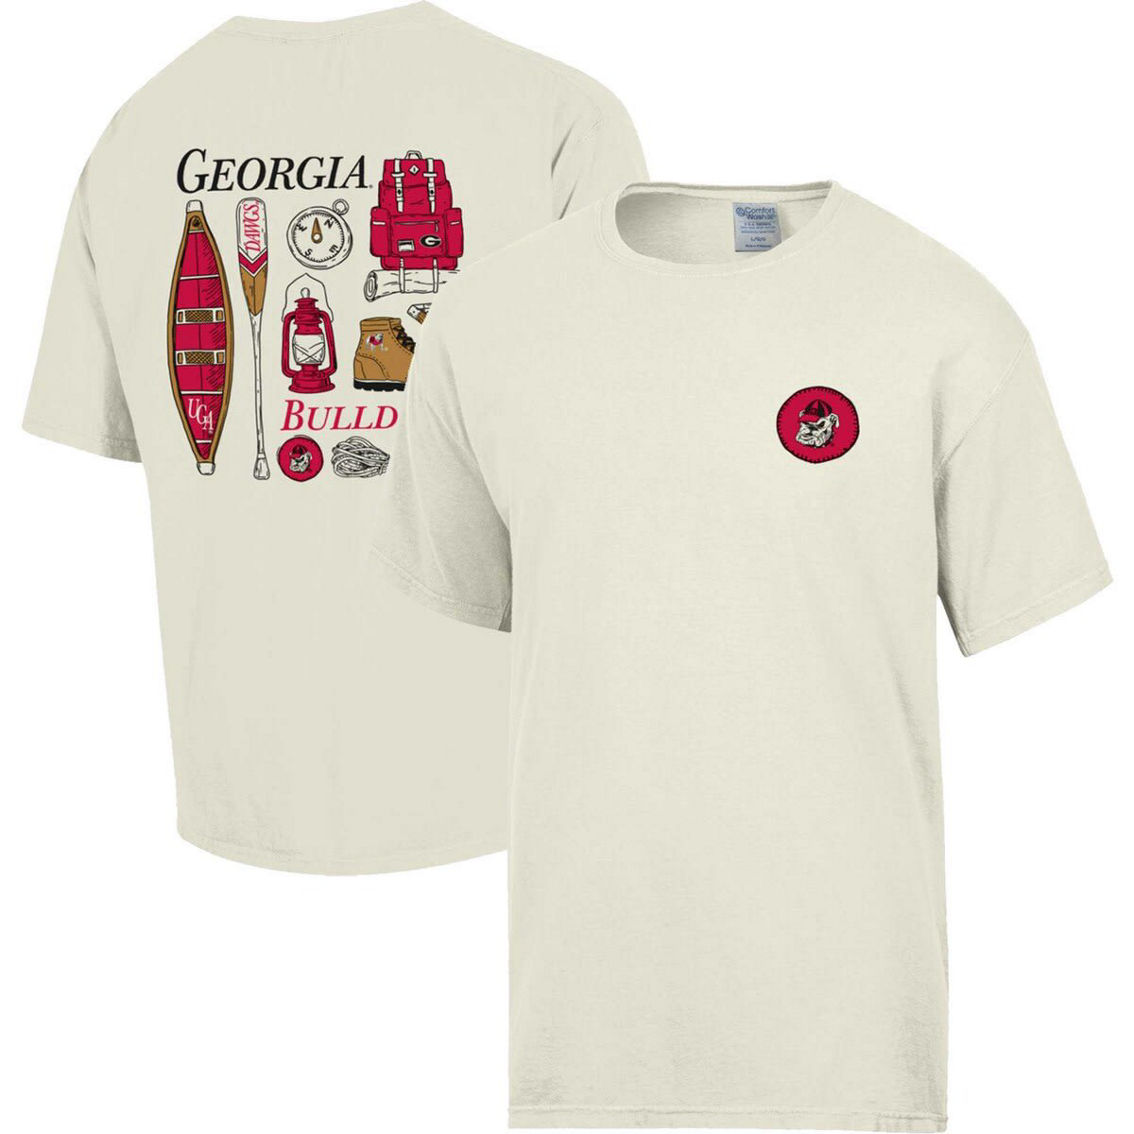 Comfort Wash Men's Comfort Wash Cream Georgia Bulldogs Camping Trip T-Shirt - Image 2 of 4